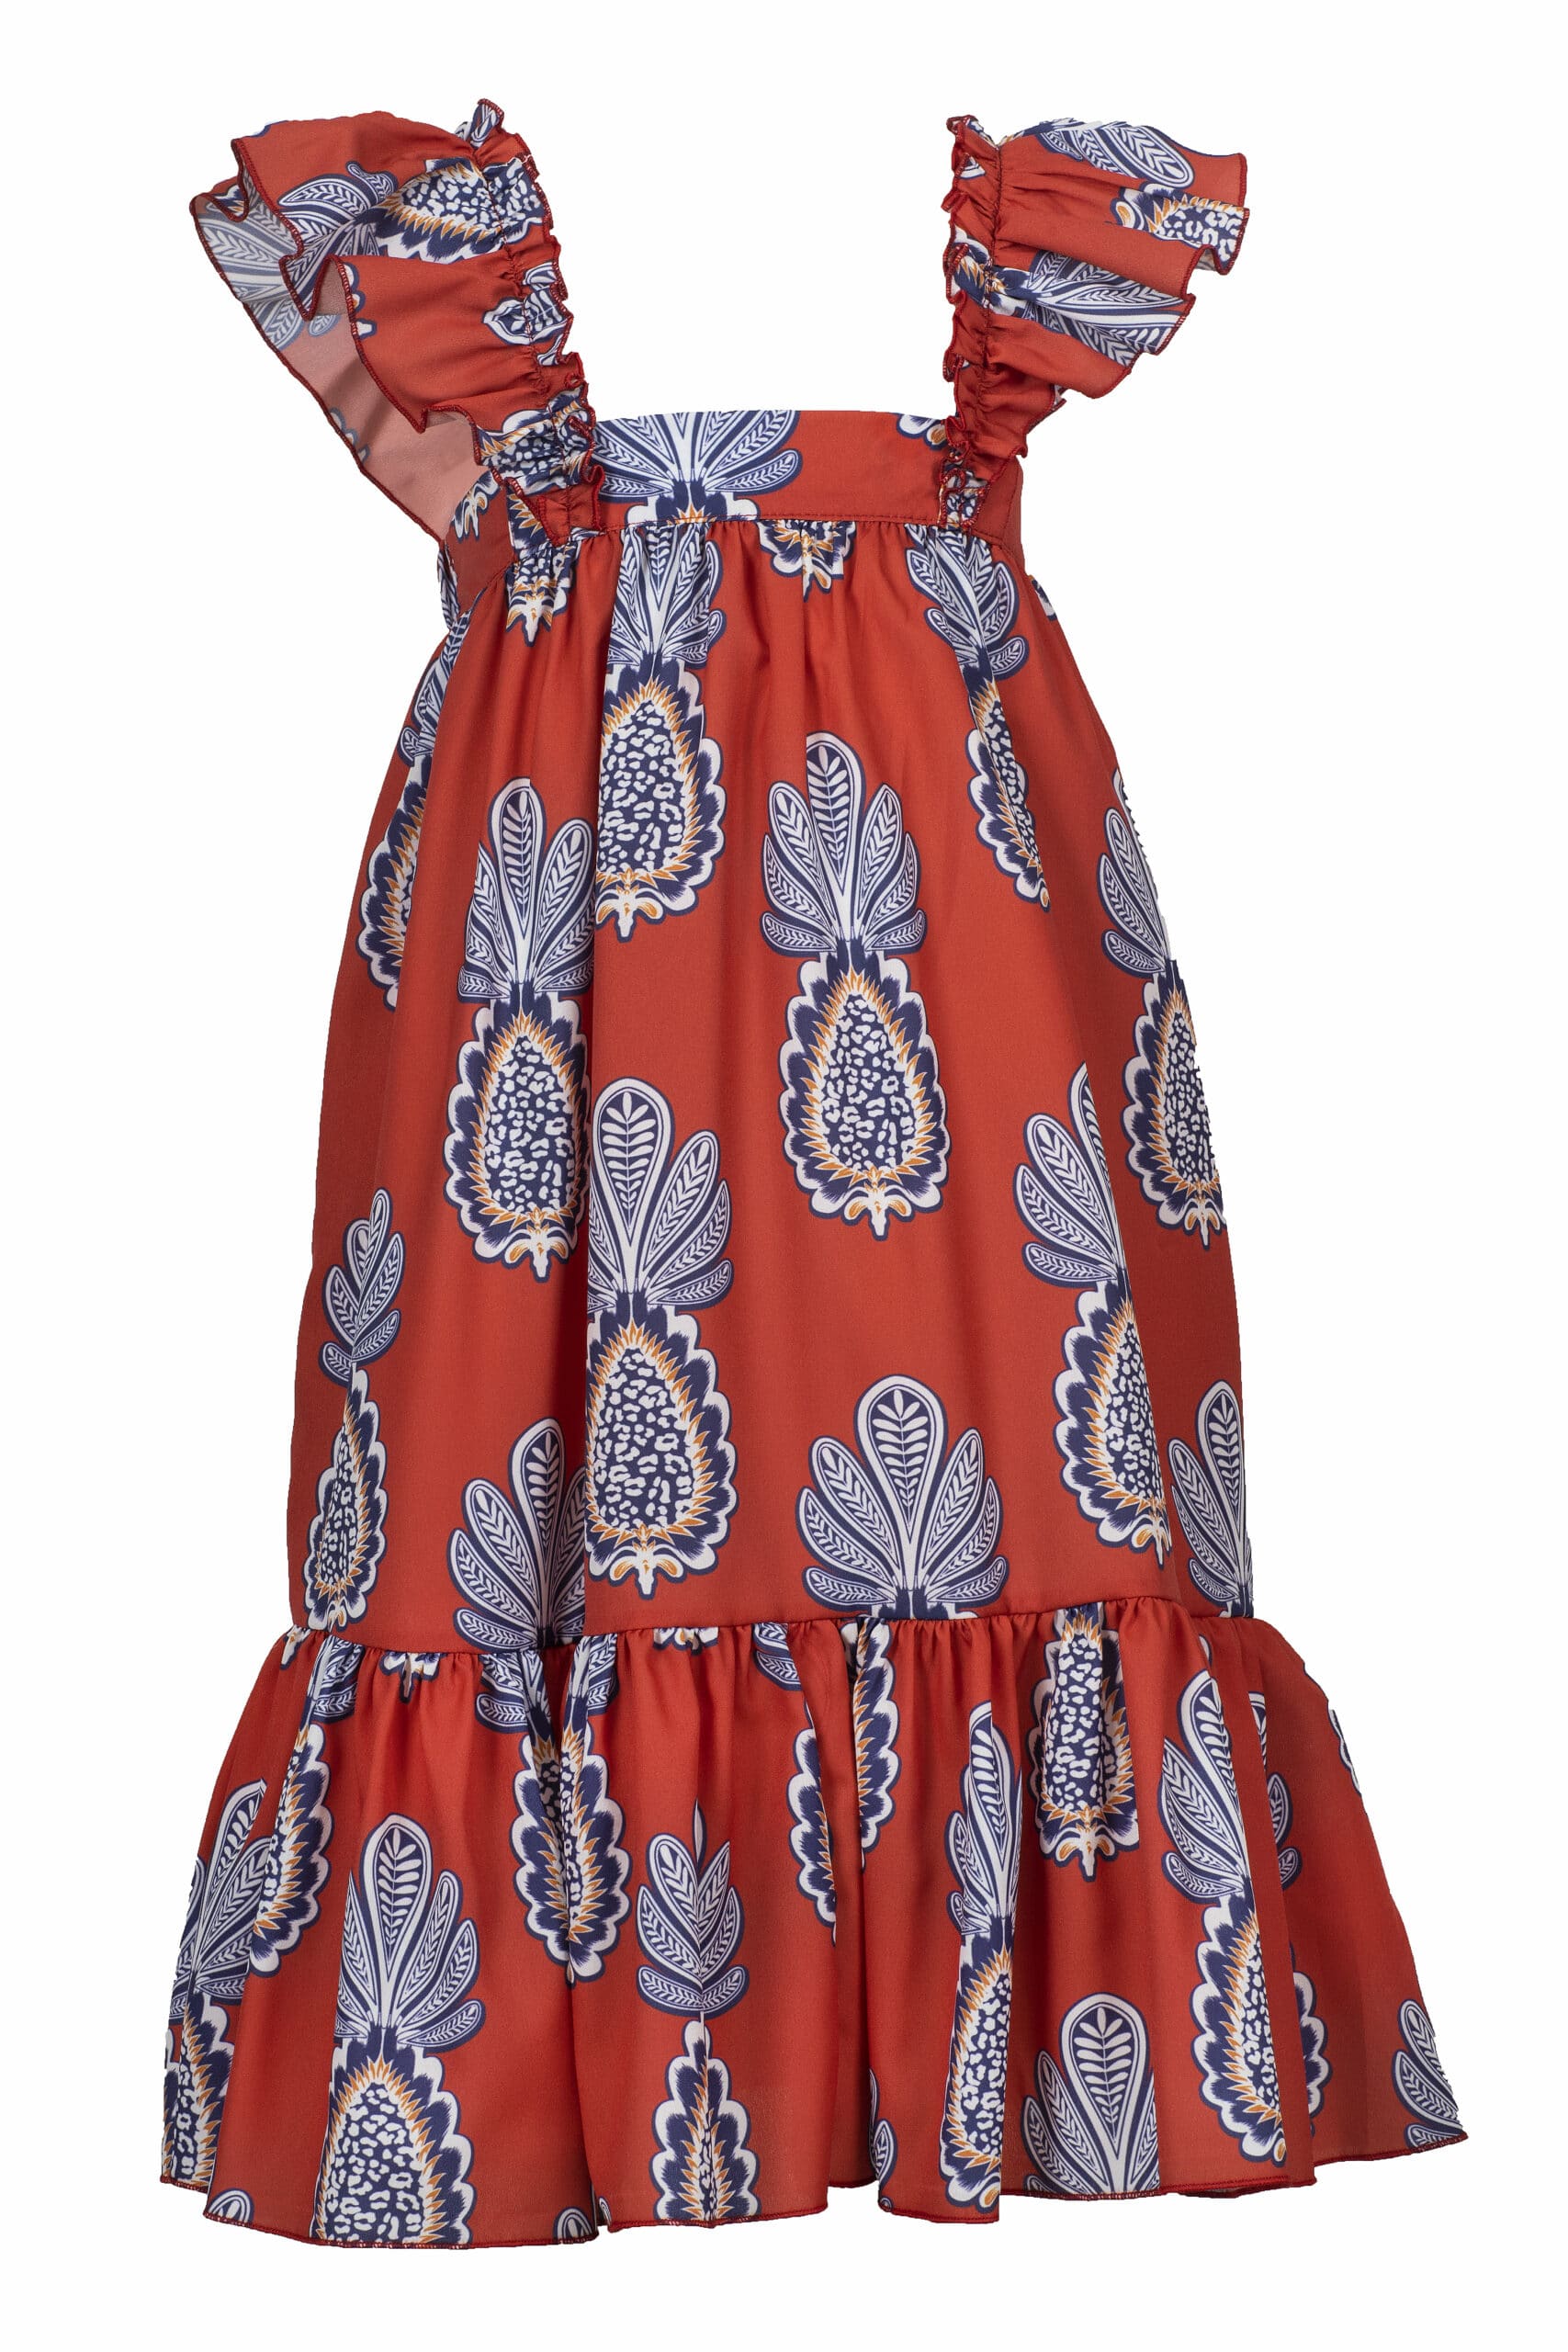 Παιδικό Φόρεμα Κόκκινο M&B FASHION 1812 - Emporio Shop